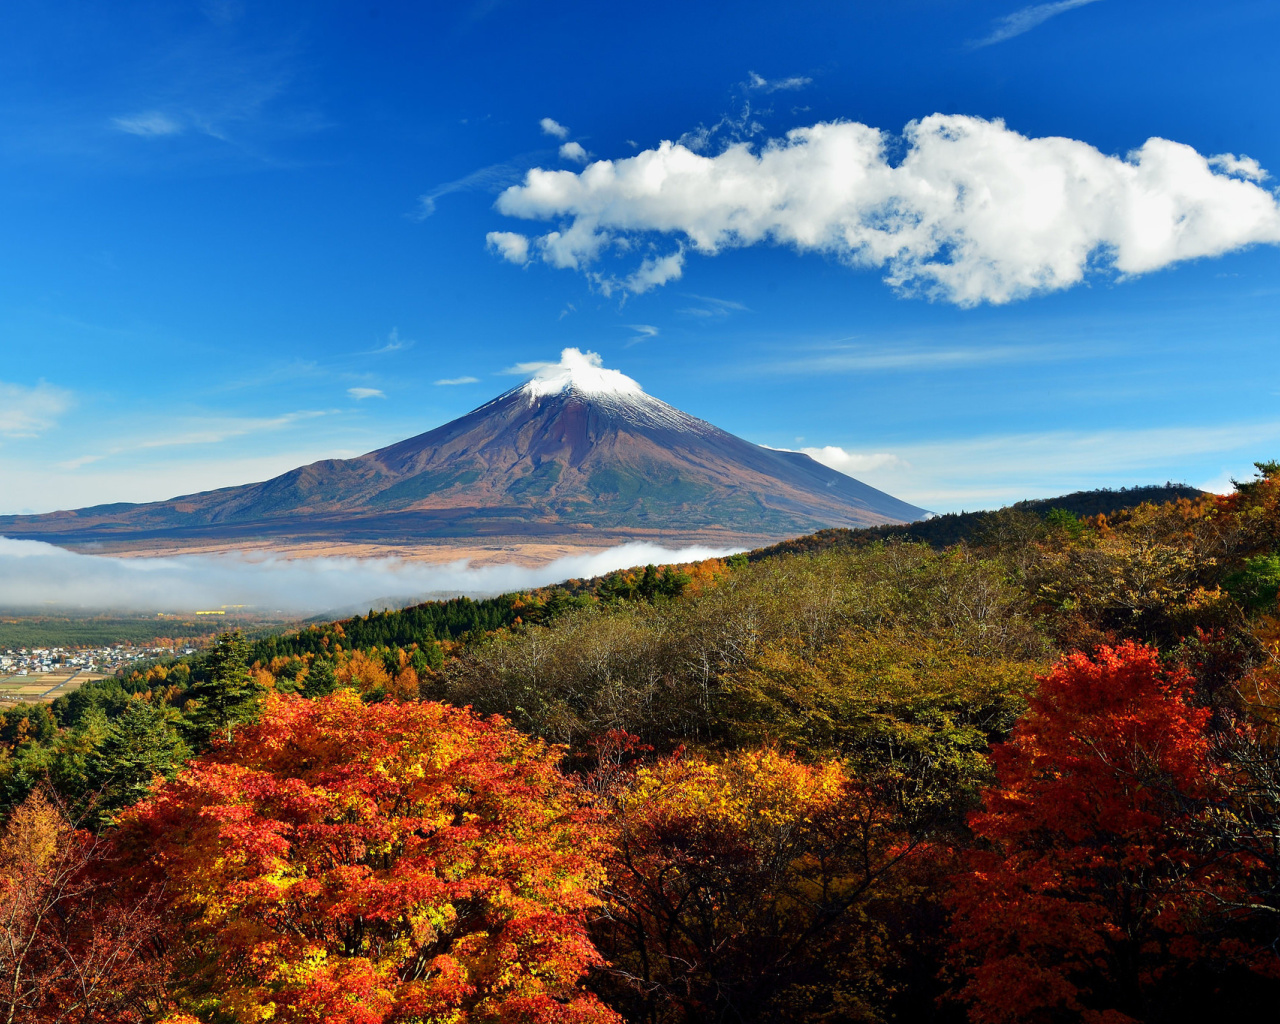 Mount Fuji 3776 Meters screenshot #1 1280x1024